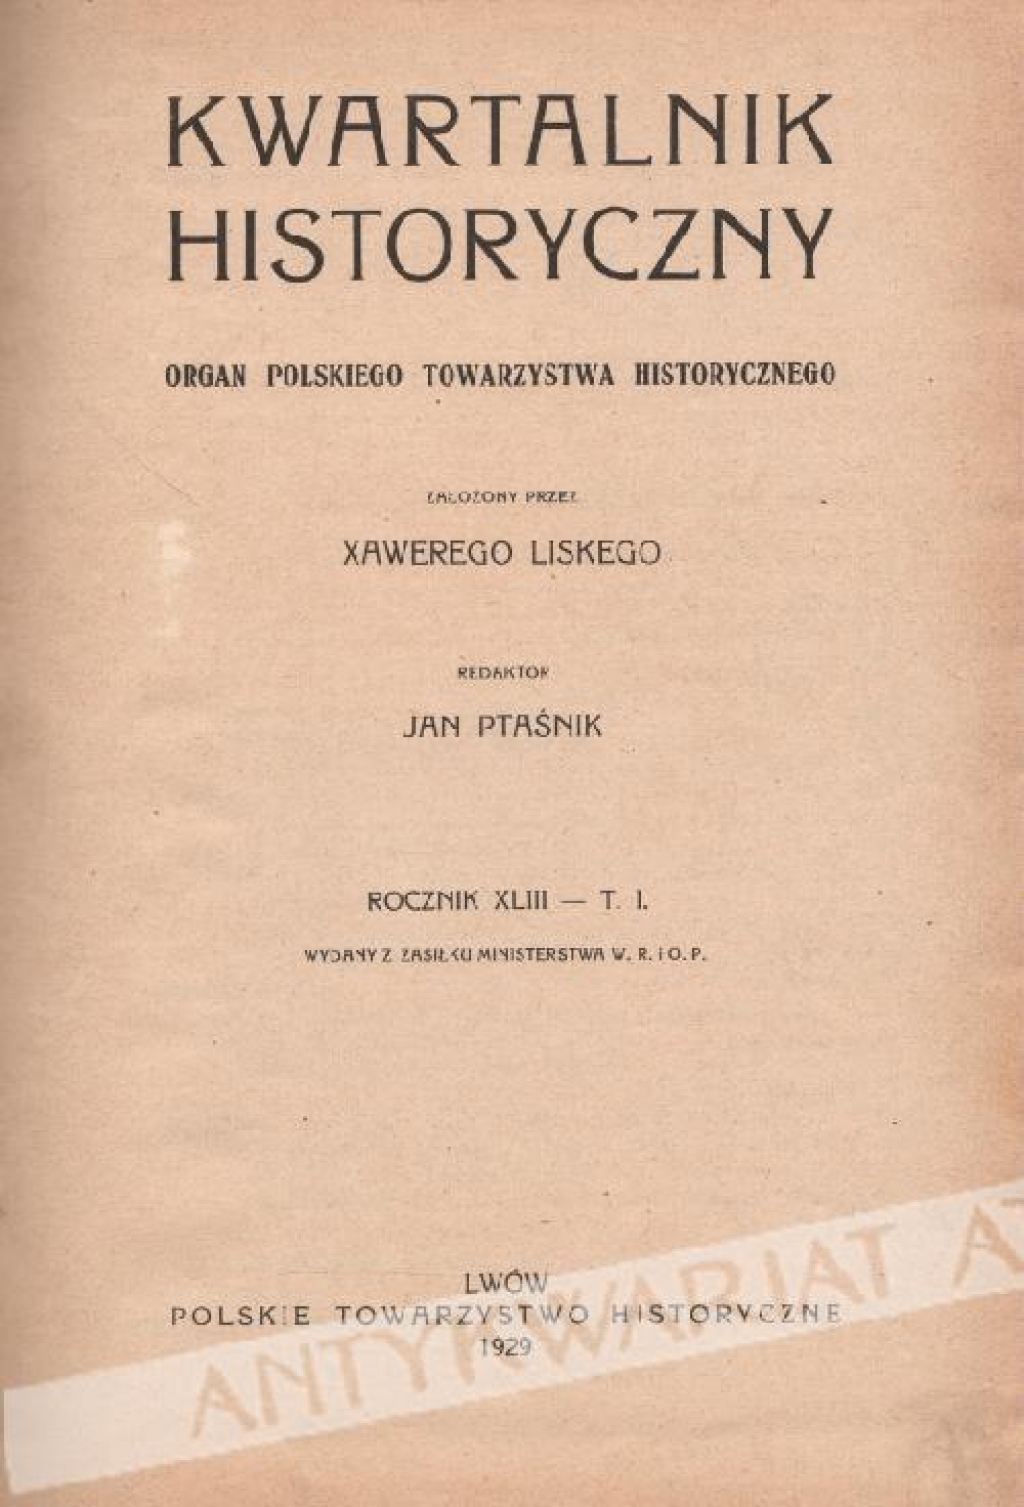 Kwartalnik historyczny. Organ Polskiego Towarzystwa Historycznego Rocznik XLIII [1929] - tom I